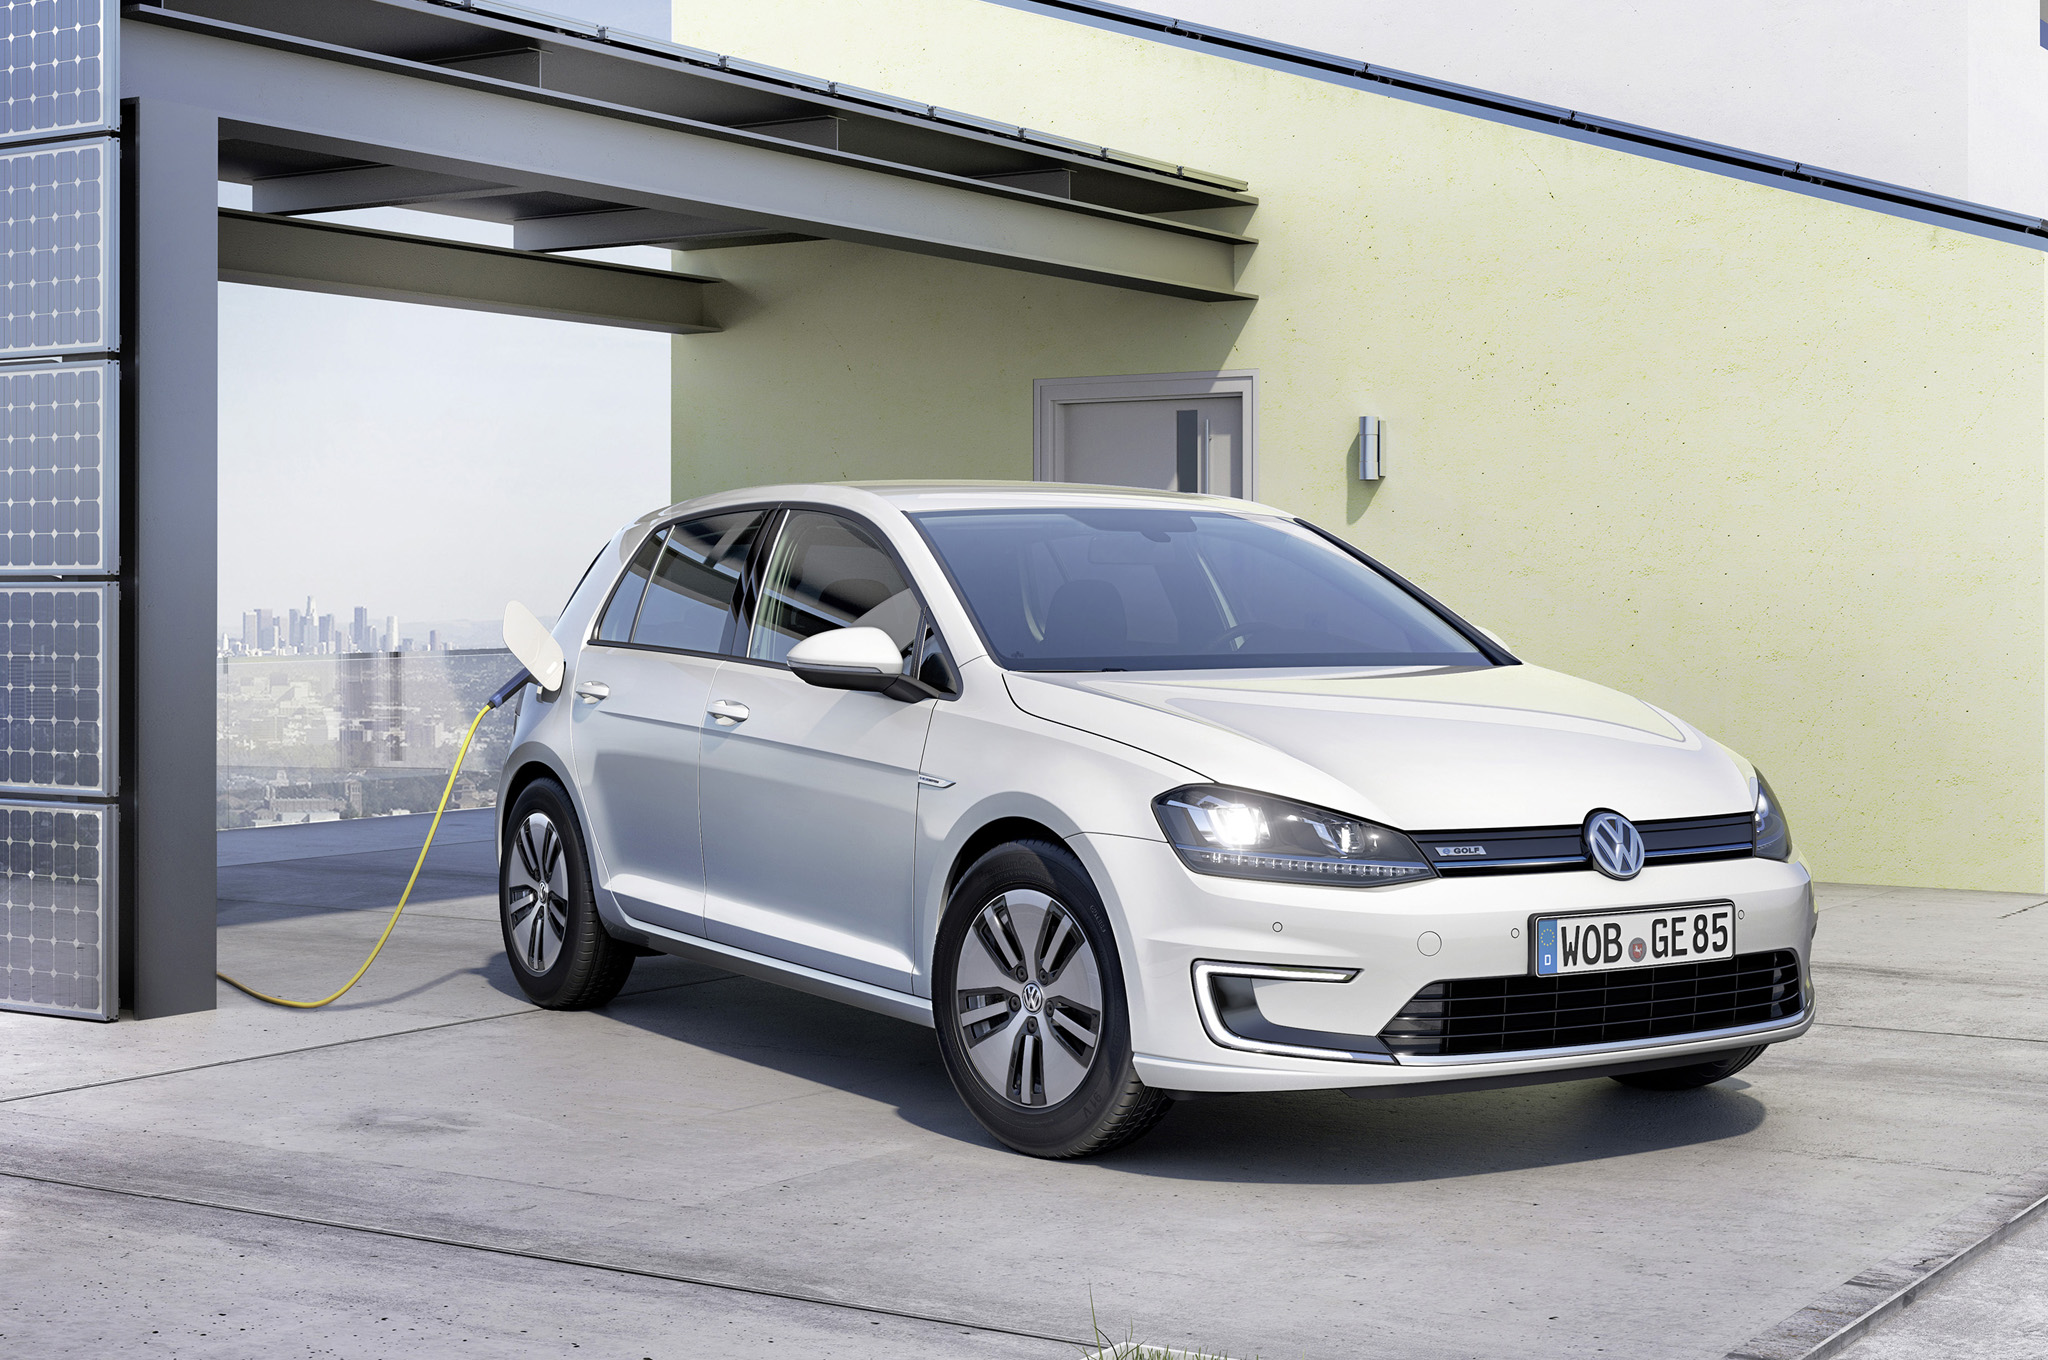  Volkswagen prepara el lanzamiento de un auto eléctrico en México